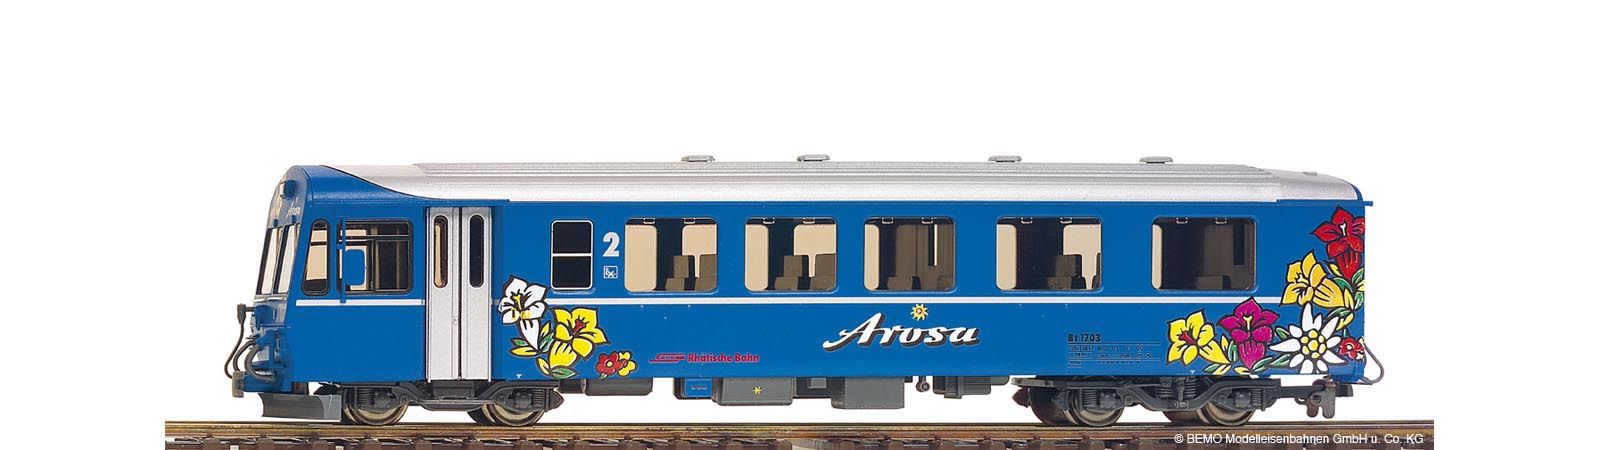 3254143 Bemo - Personenwagen RhB Bt 1703 Steuerwagen Arosa Express - Spur H0m